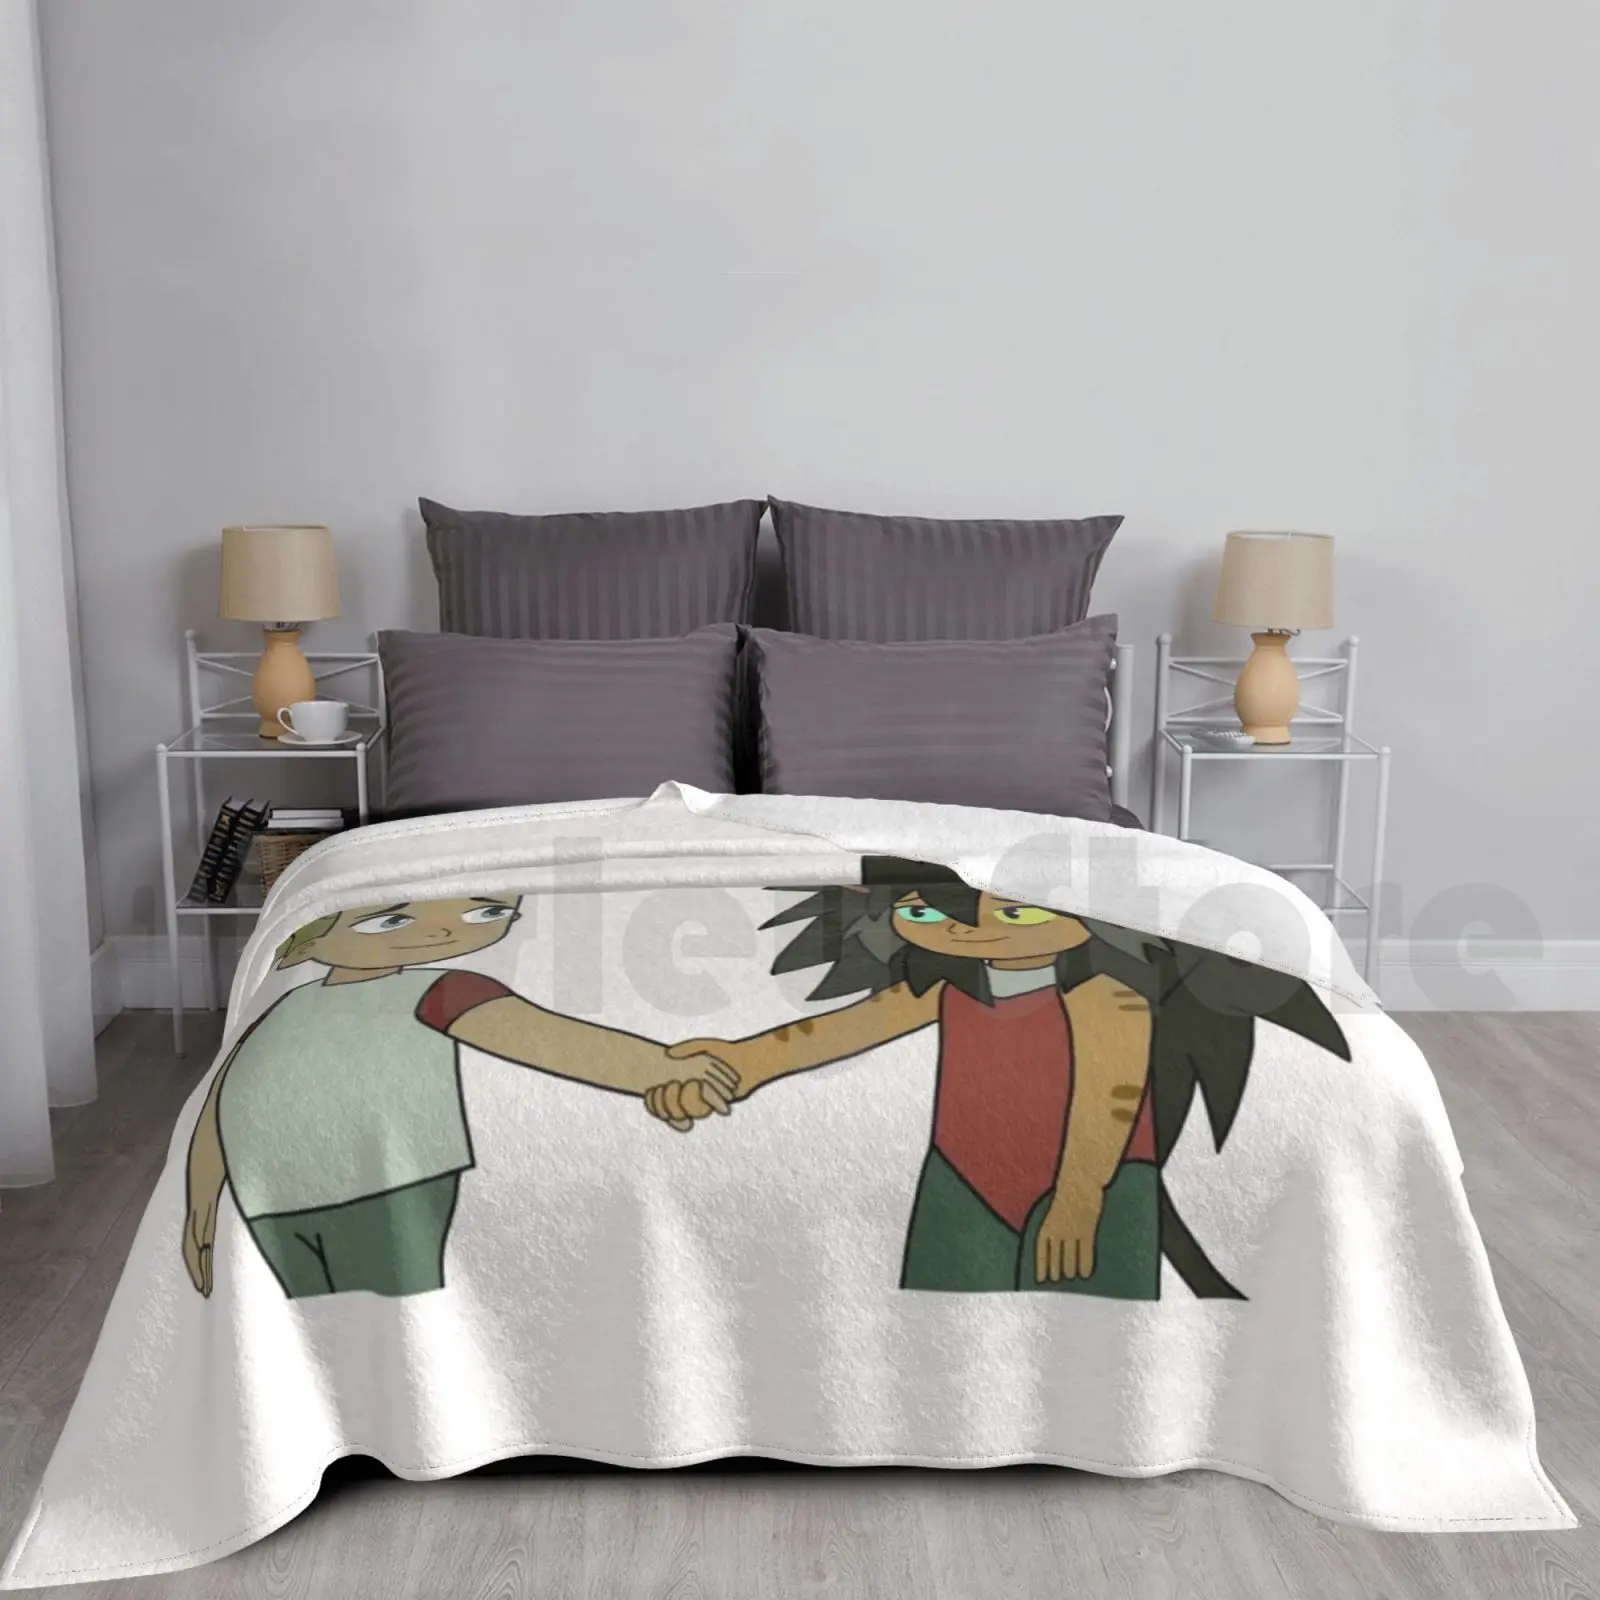 

Маленькое одеяло Catradora с руками для дивана-кровати для путешествий Shera She Ra Spop Catradora Catra Adora